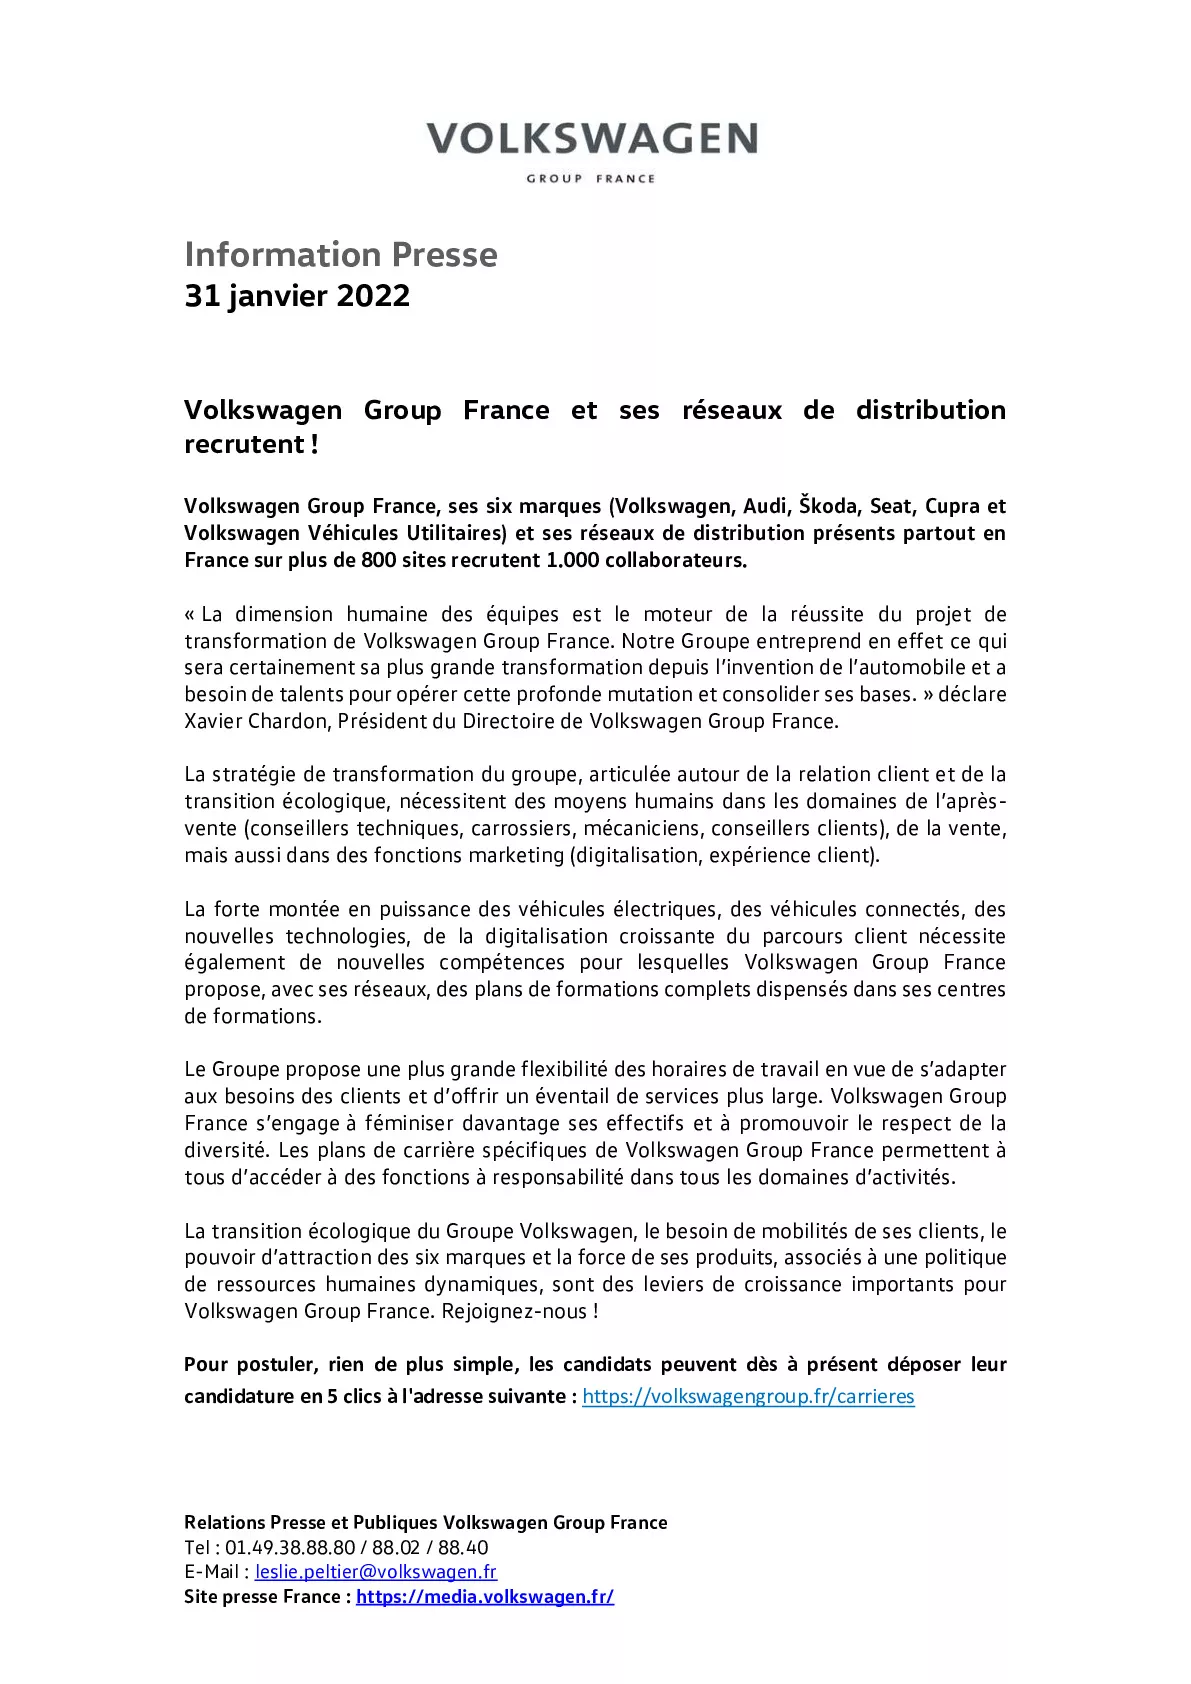 22_01_31_Volkswagen Group France et ses réseaux de distribution recrutent-pdf